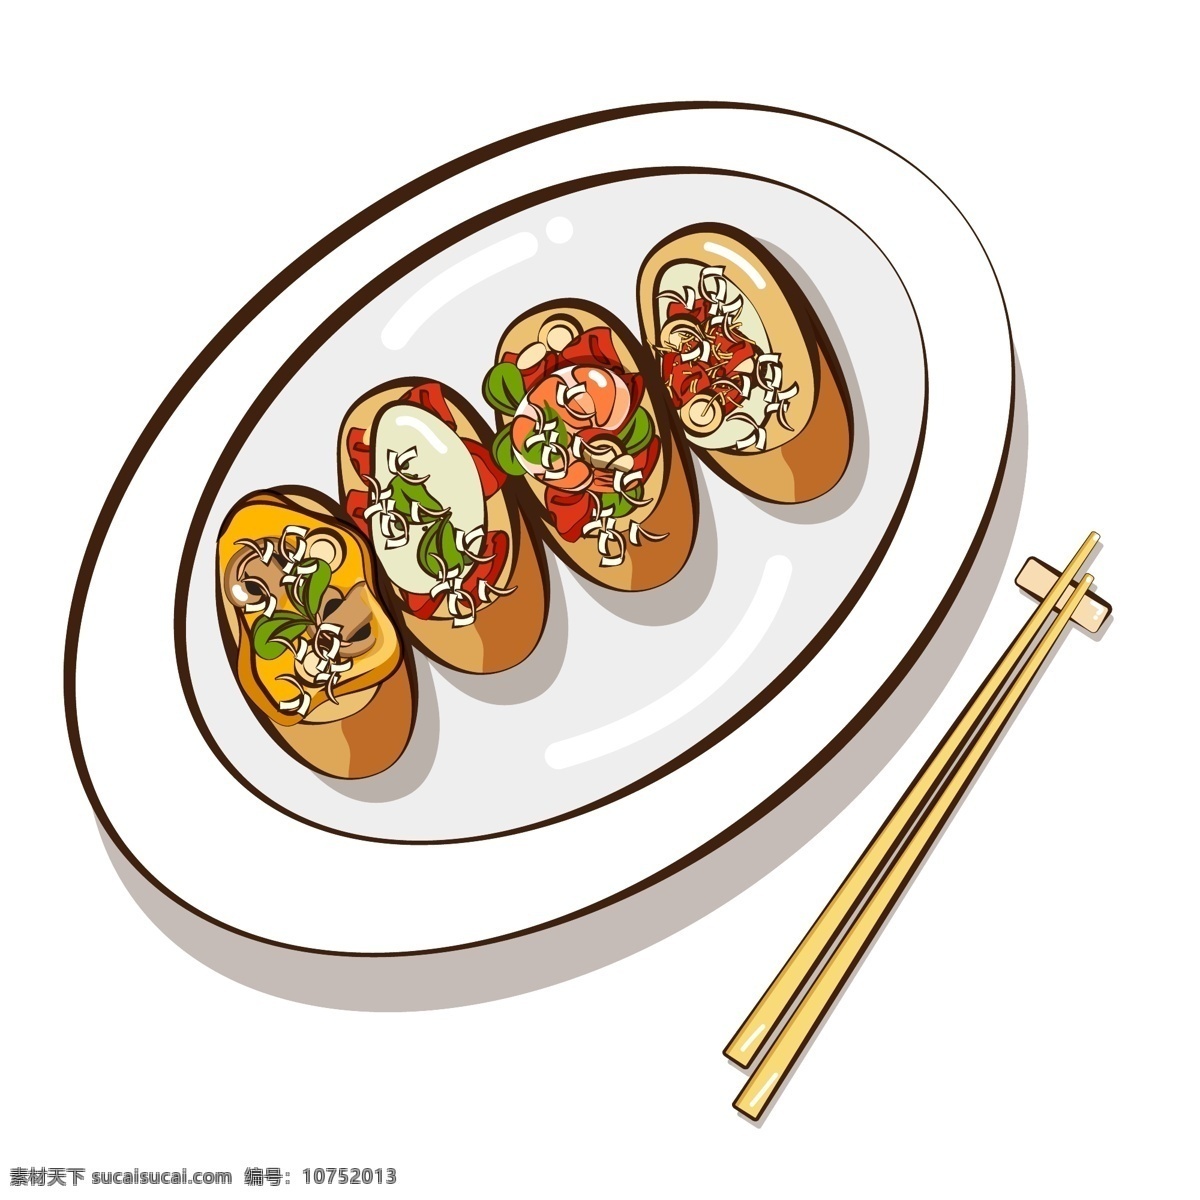 原创 矢量 卡通 美食 料理 商用 豆腐 海鲜 食物 虾